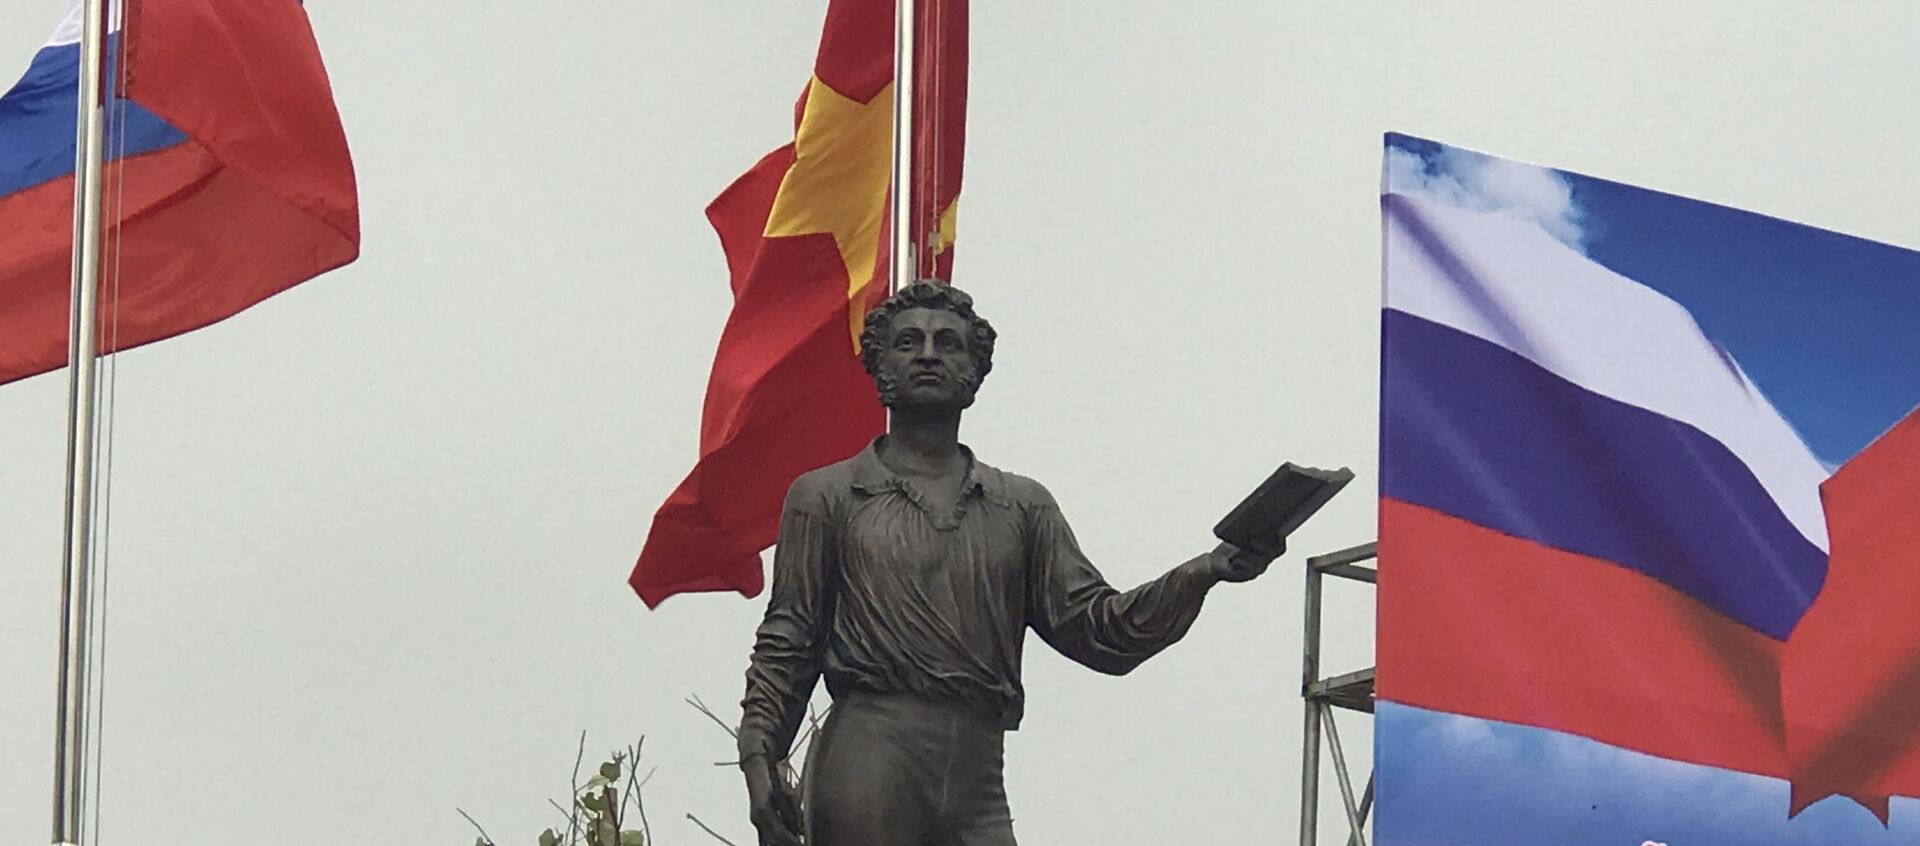 Bức tượng đồng nguyên khối có trọng lượng 1,5 tấn, cao 2,1m là tác phẩm nghệ thuật tuyệt đẹp phía Nga dành tặng Việt Nam. - Sputnik Việt Nam, 1920, 17.03.2021